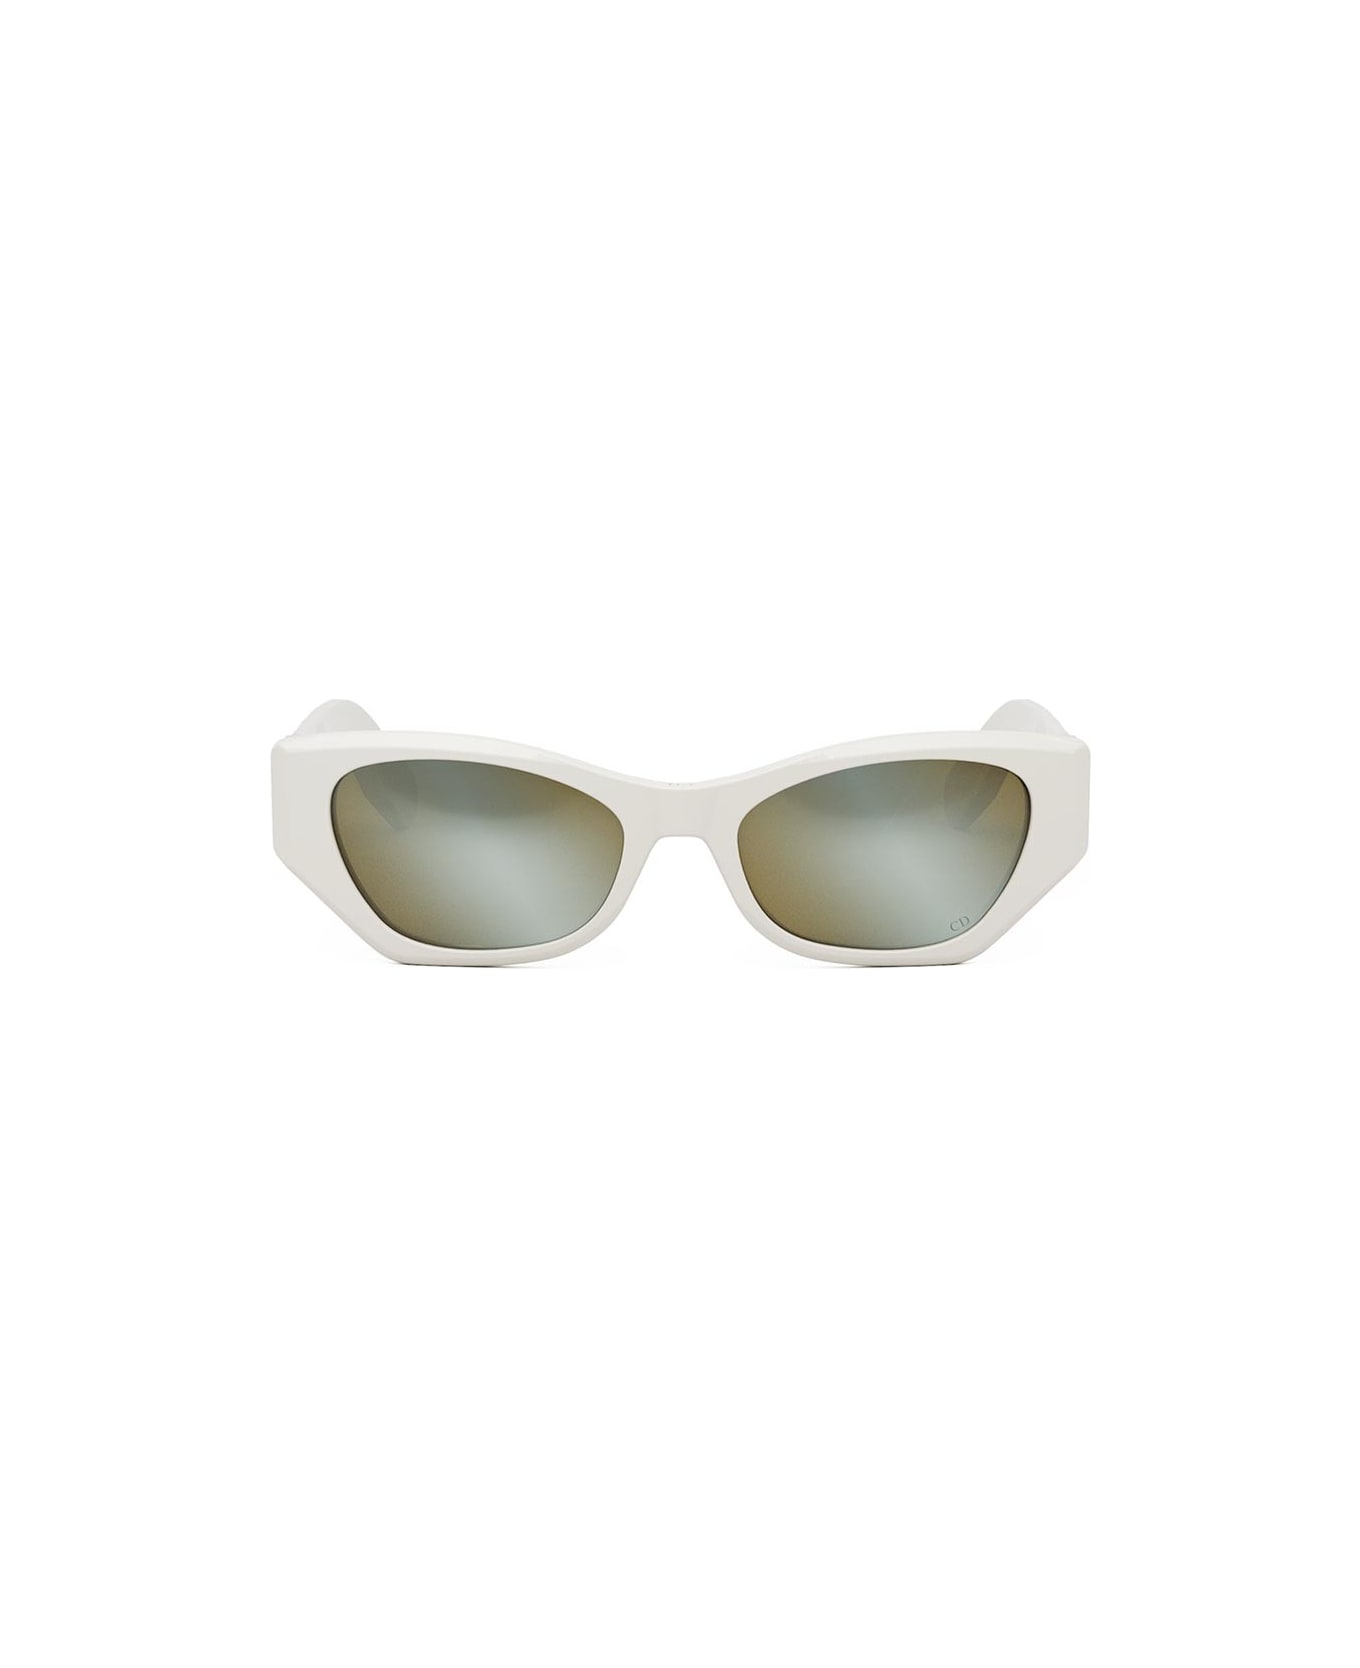 Dior Eyewear Sunglasses - Bianco/Marrone specchiato